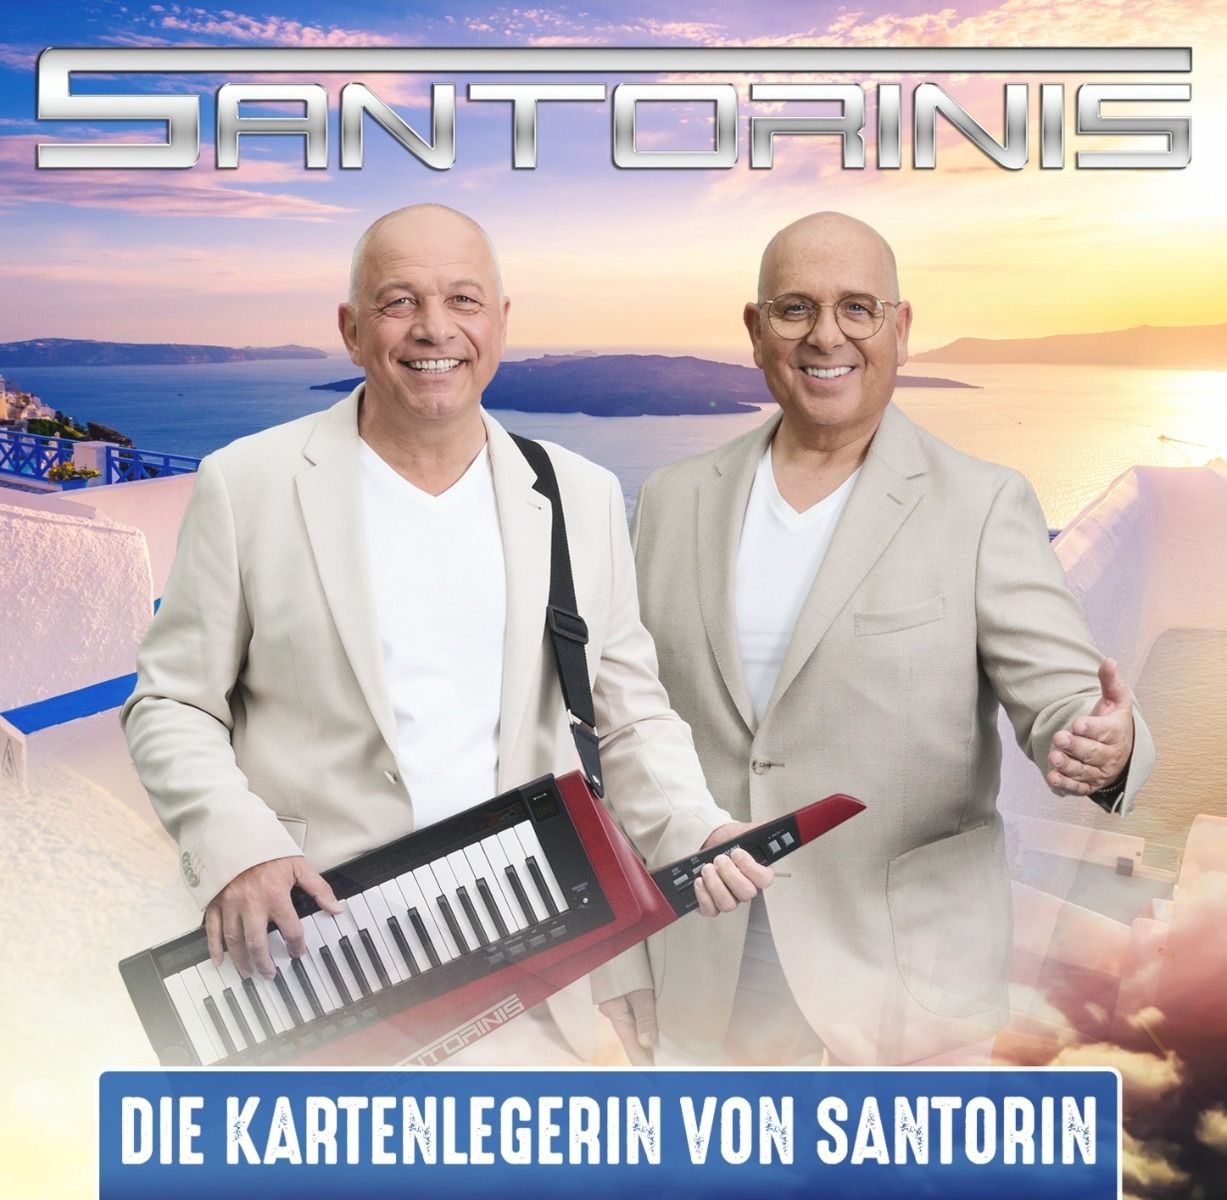 Santorinis - Die Kartenlegerin von Santorin (2021) 